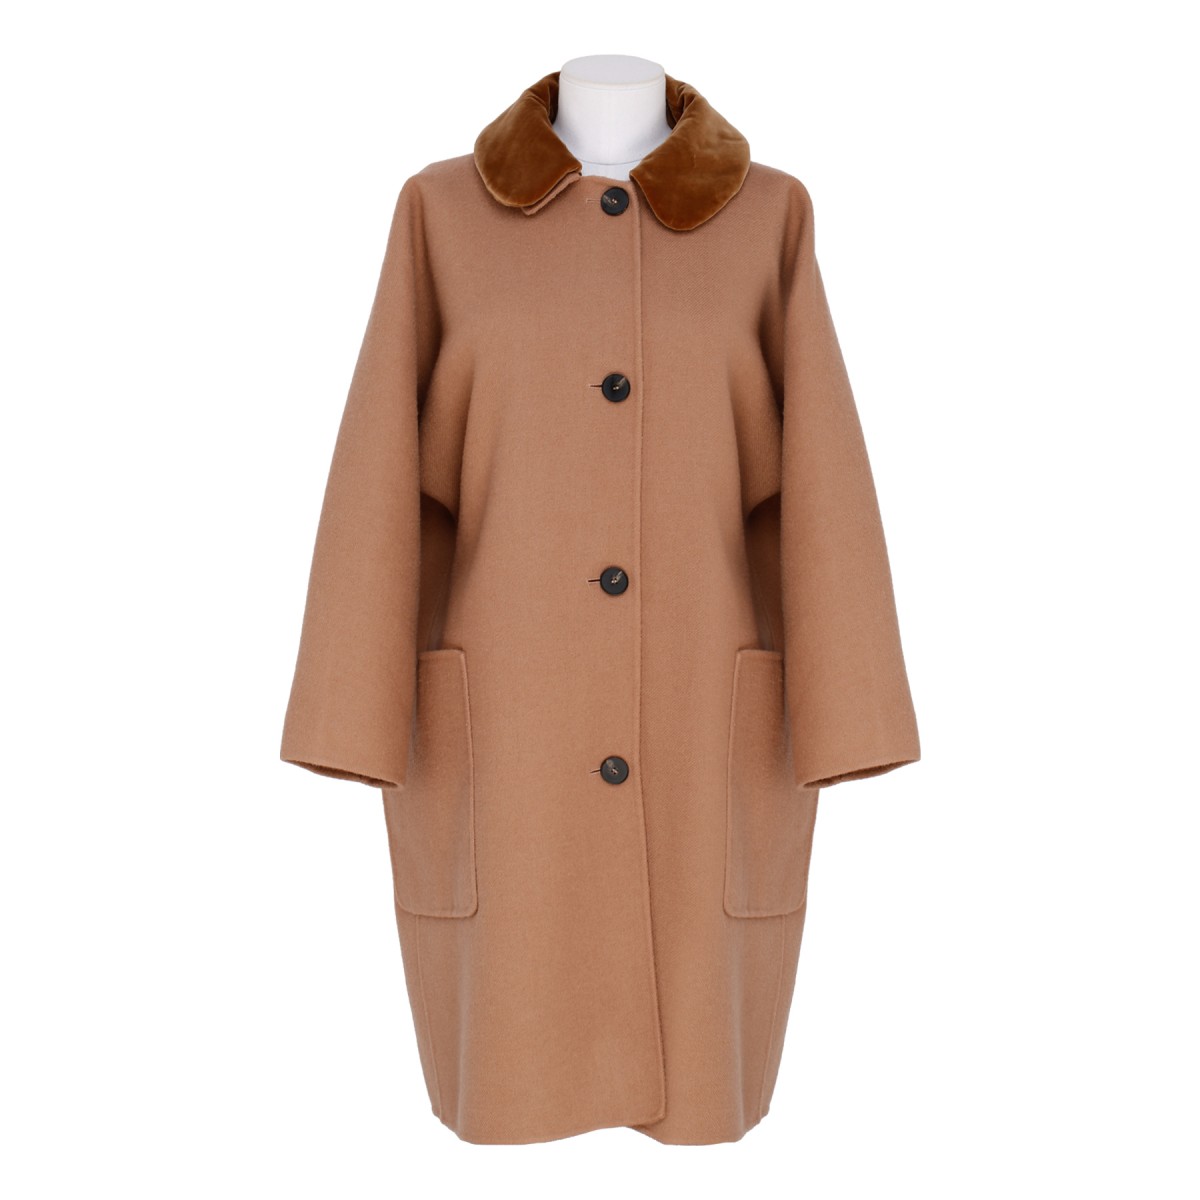 Beige wool coat with velvet collar